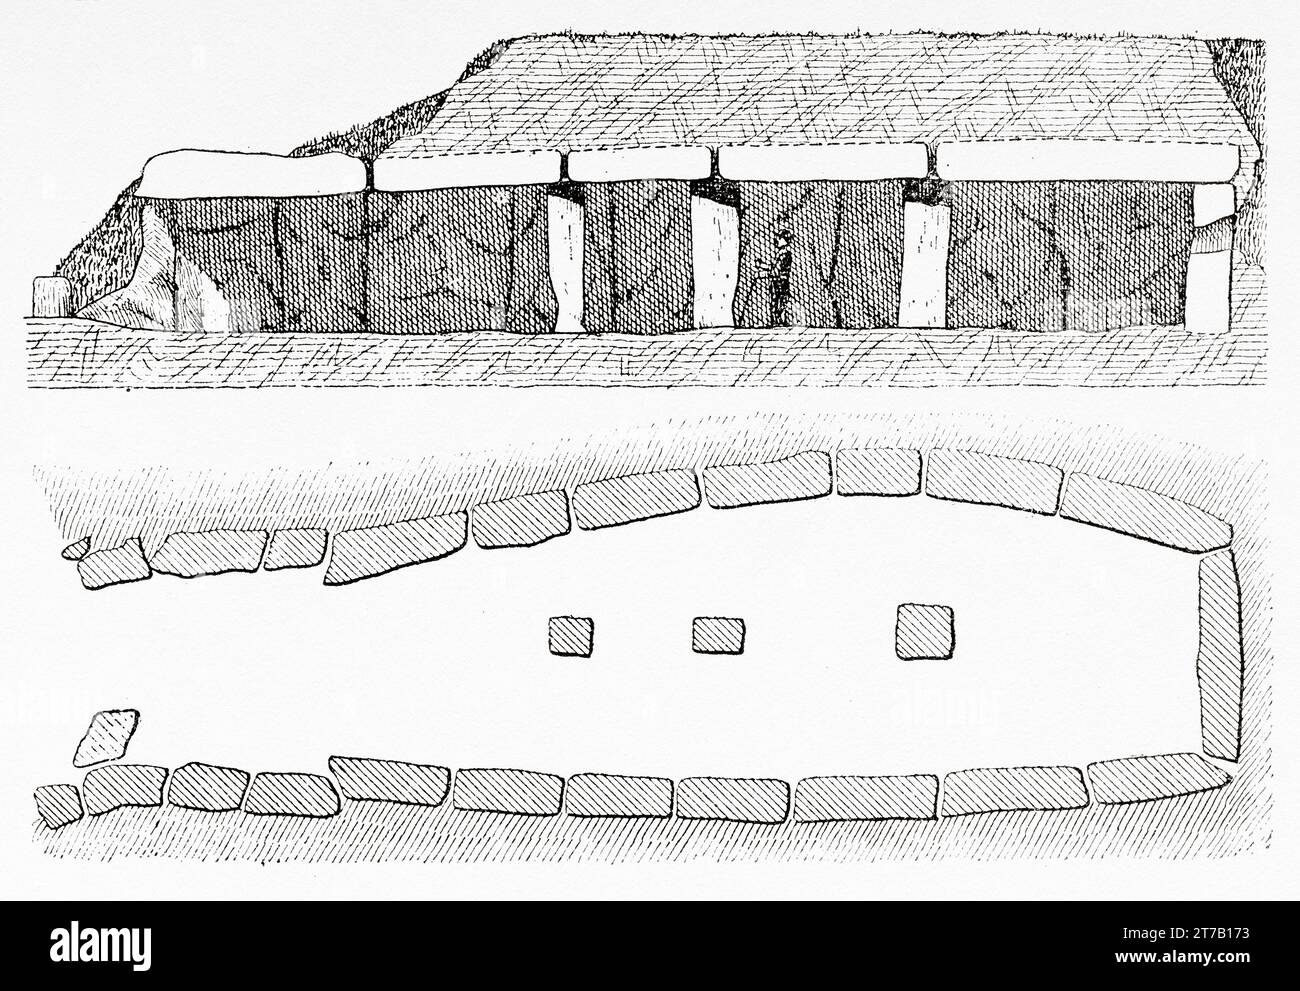 Dolmen megalitico di Menga, Antequera, sito patrimonio dell'umanità dell'UNESCO, provincia di Málaga, Andalusia, Spagna. Vecchia illustrazione di la Nature 1887 Foto Stock